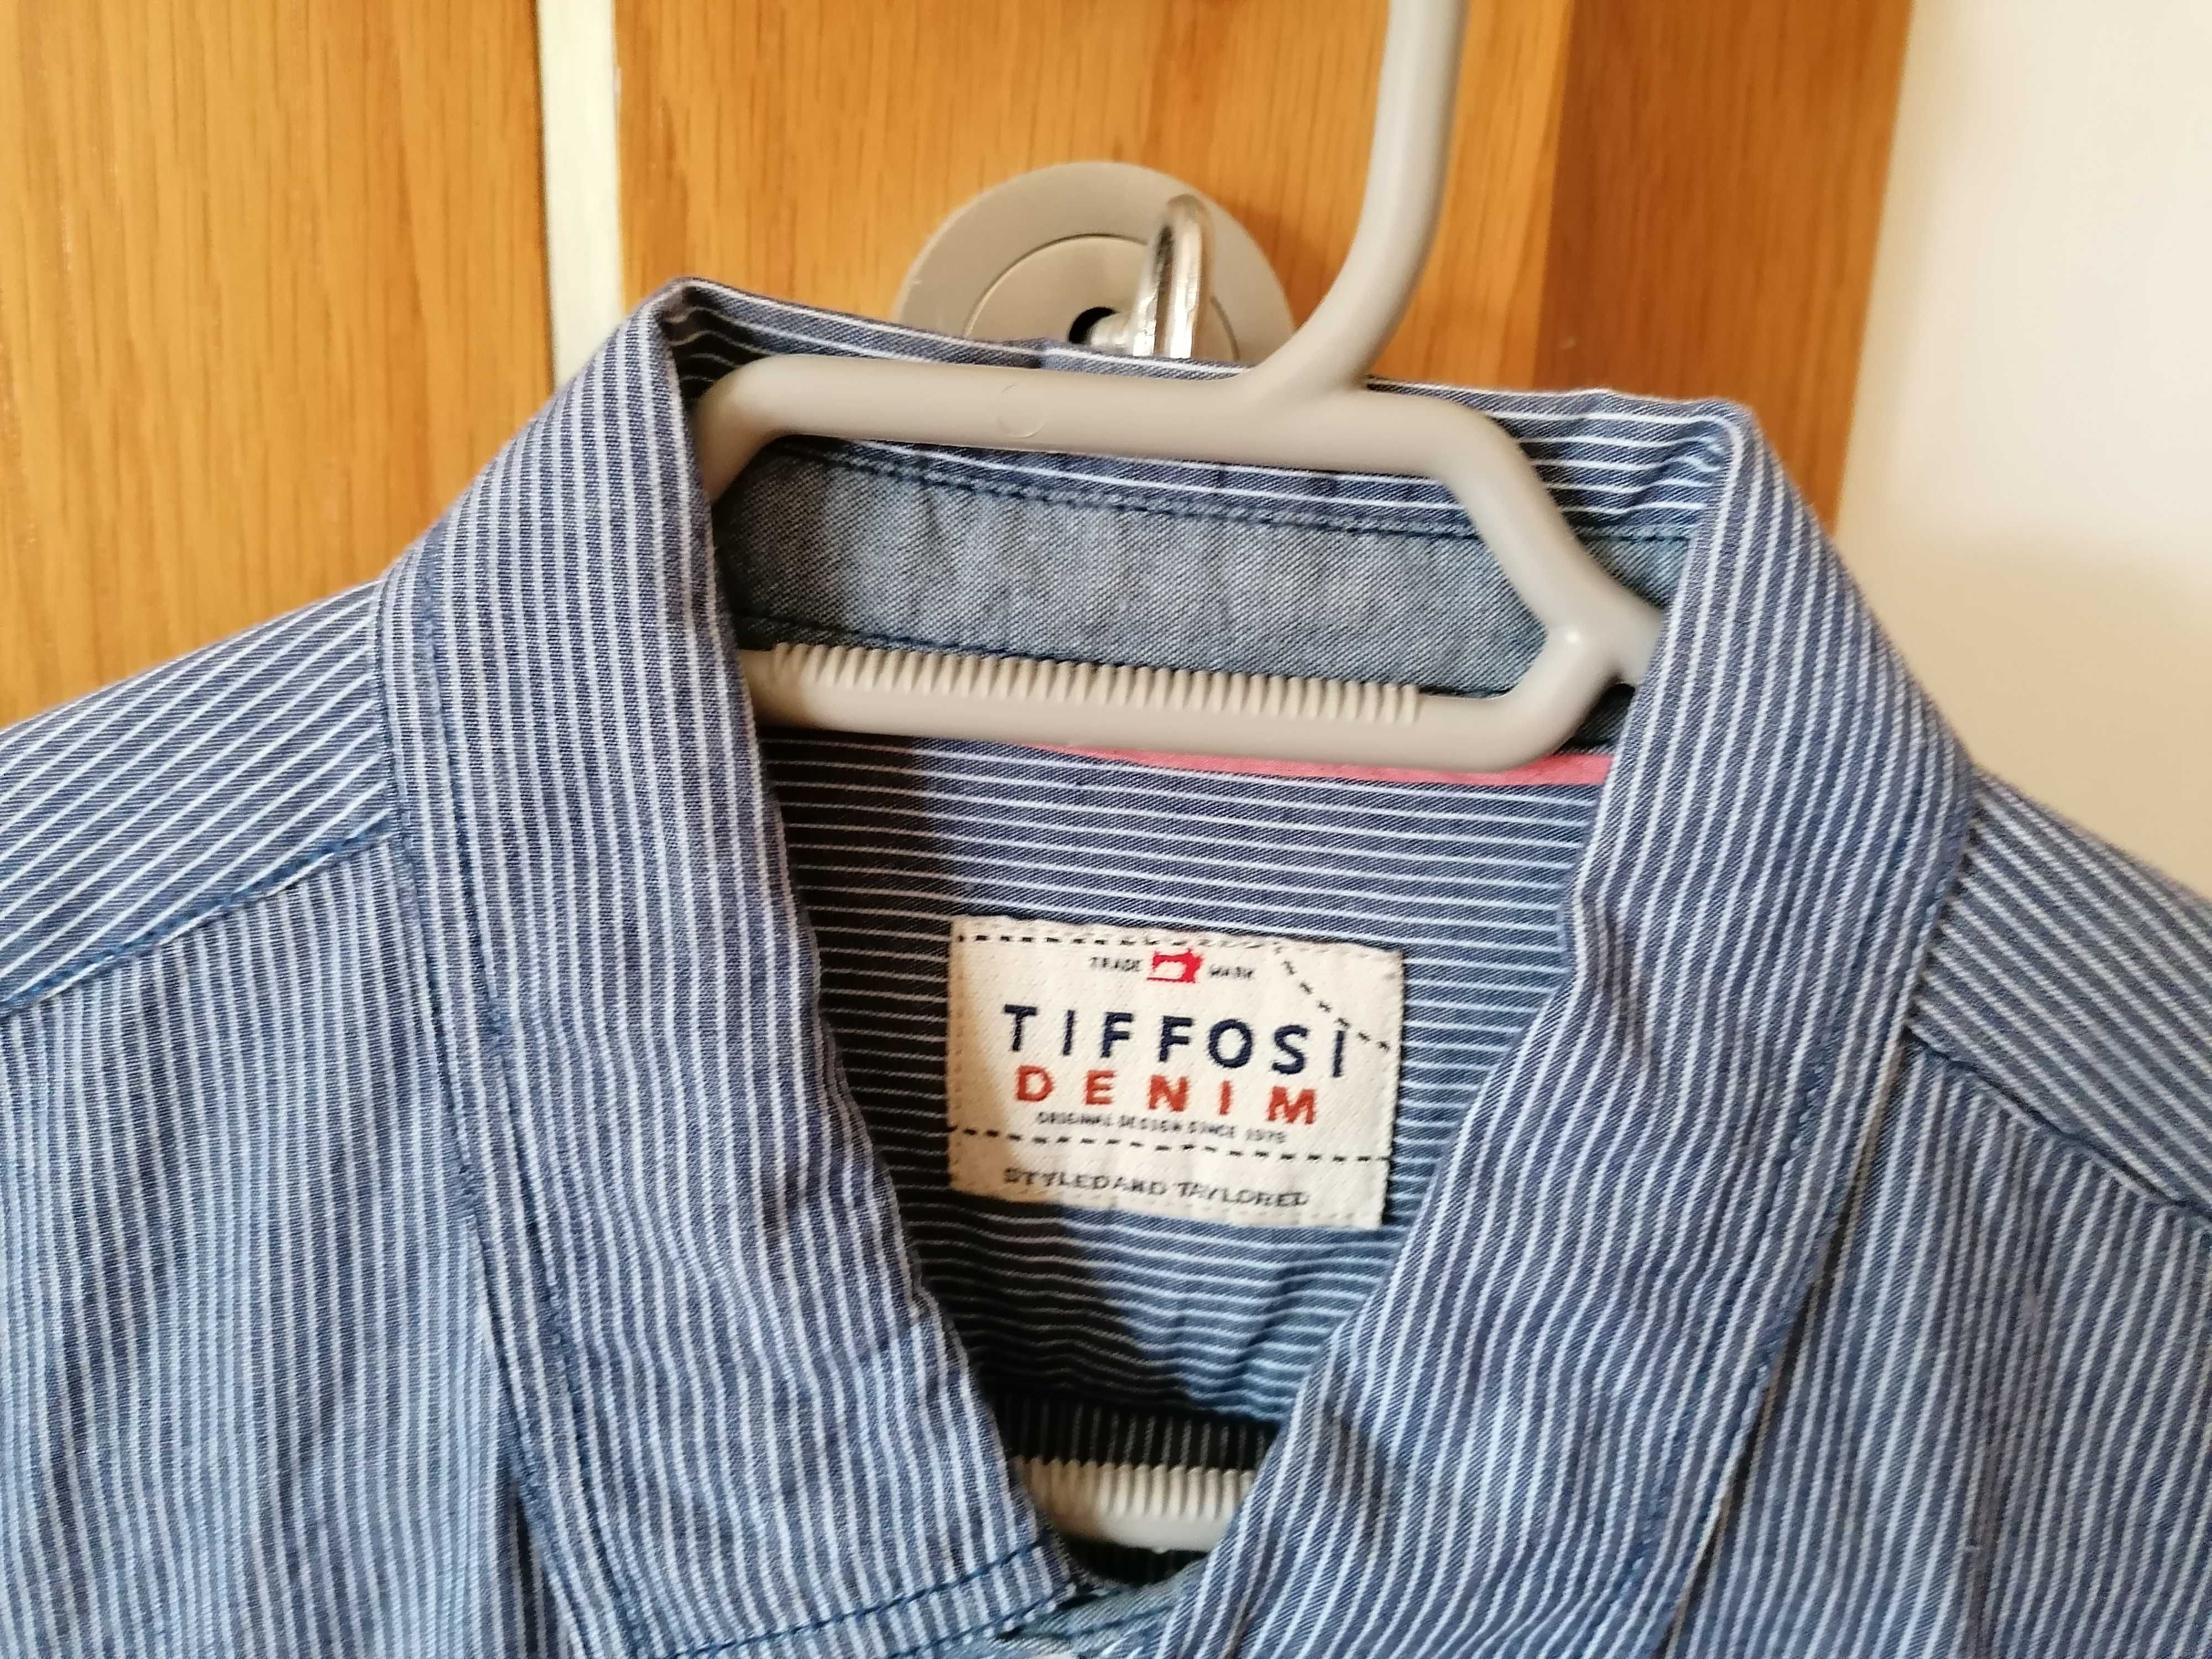 Camisa em tons de azul e branco - Tiffosi